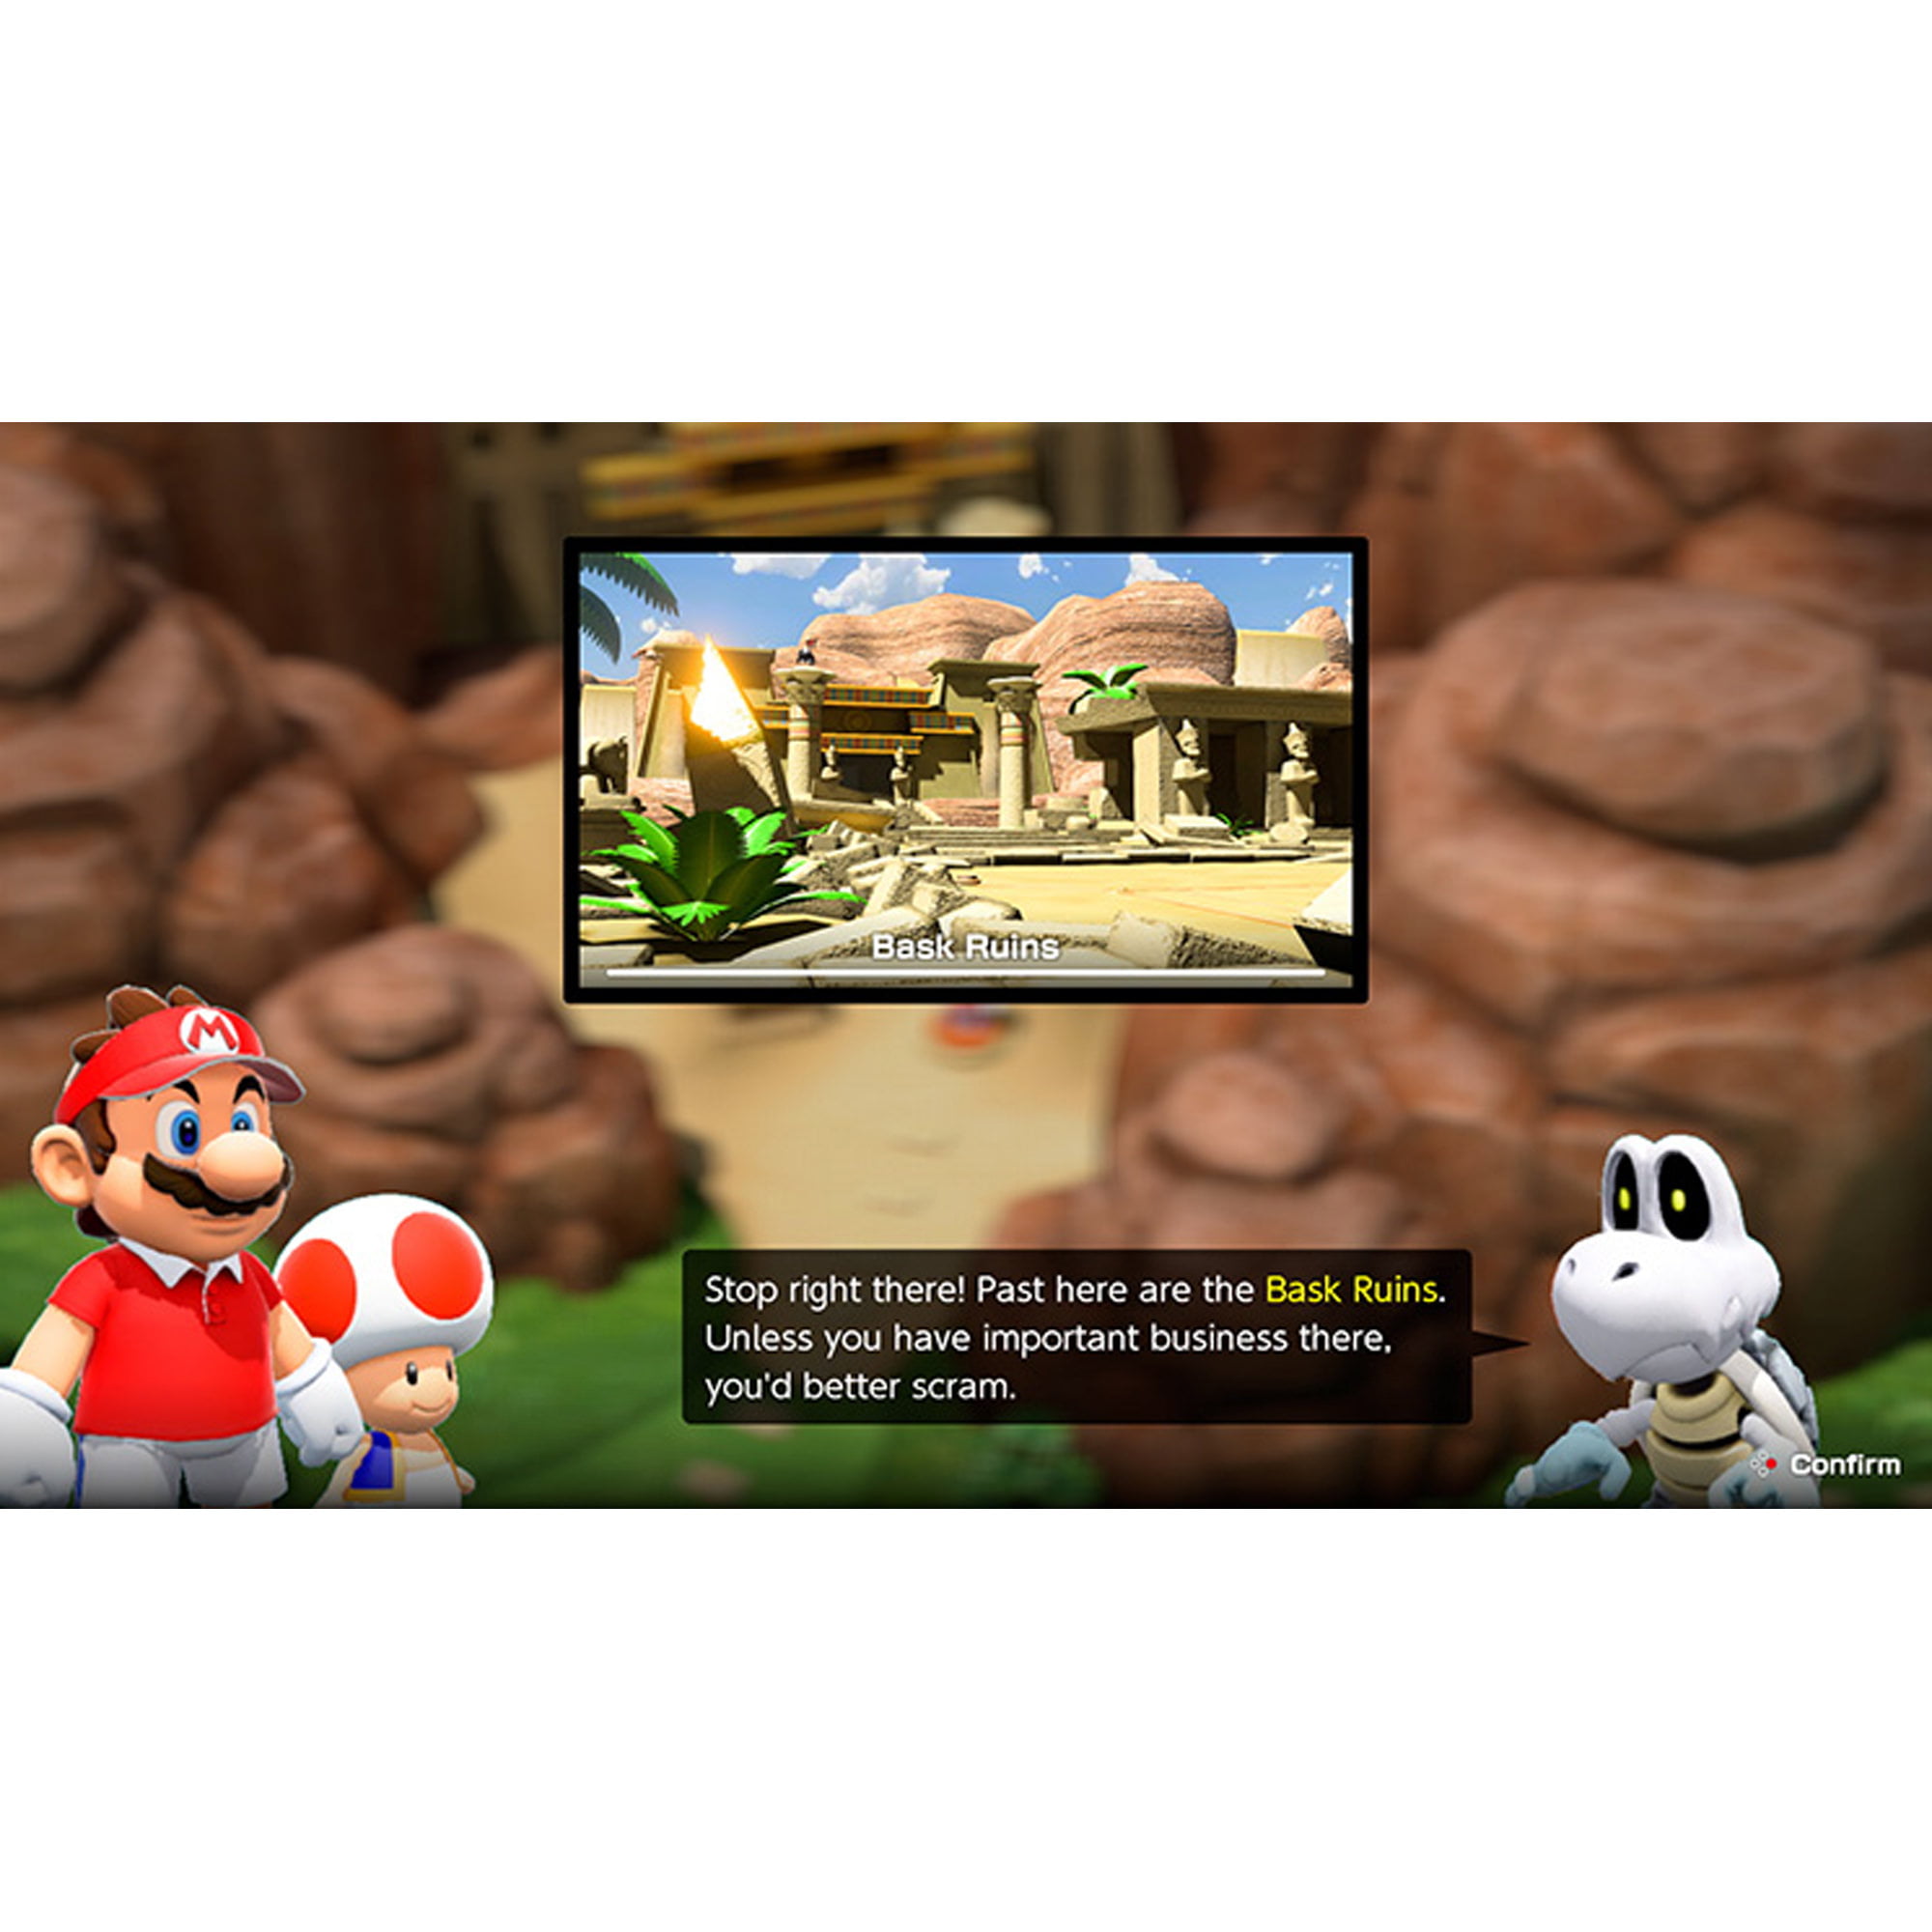 Mario Tennis Aces Nintendo Nintendo Switch Digital Download